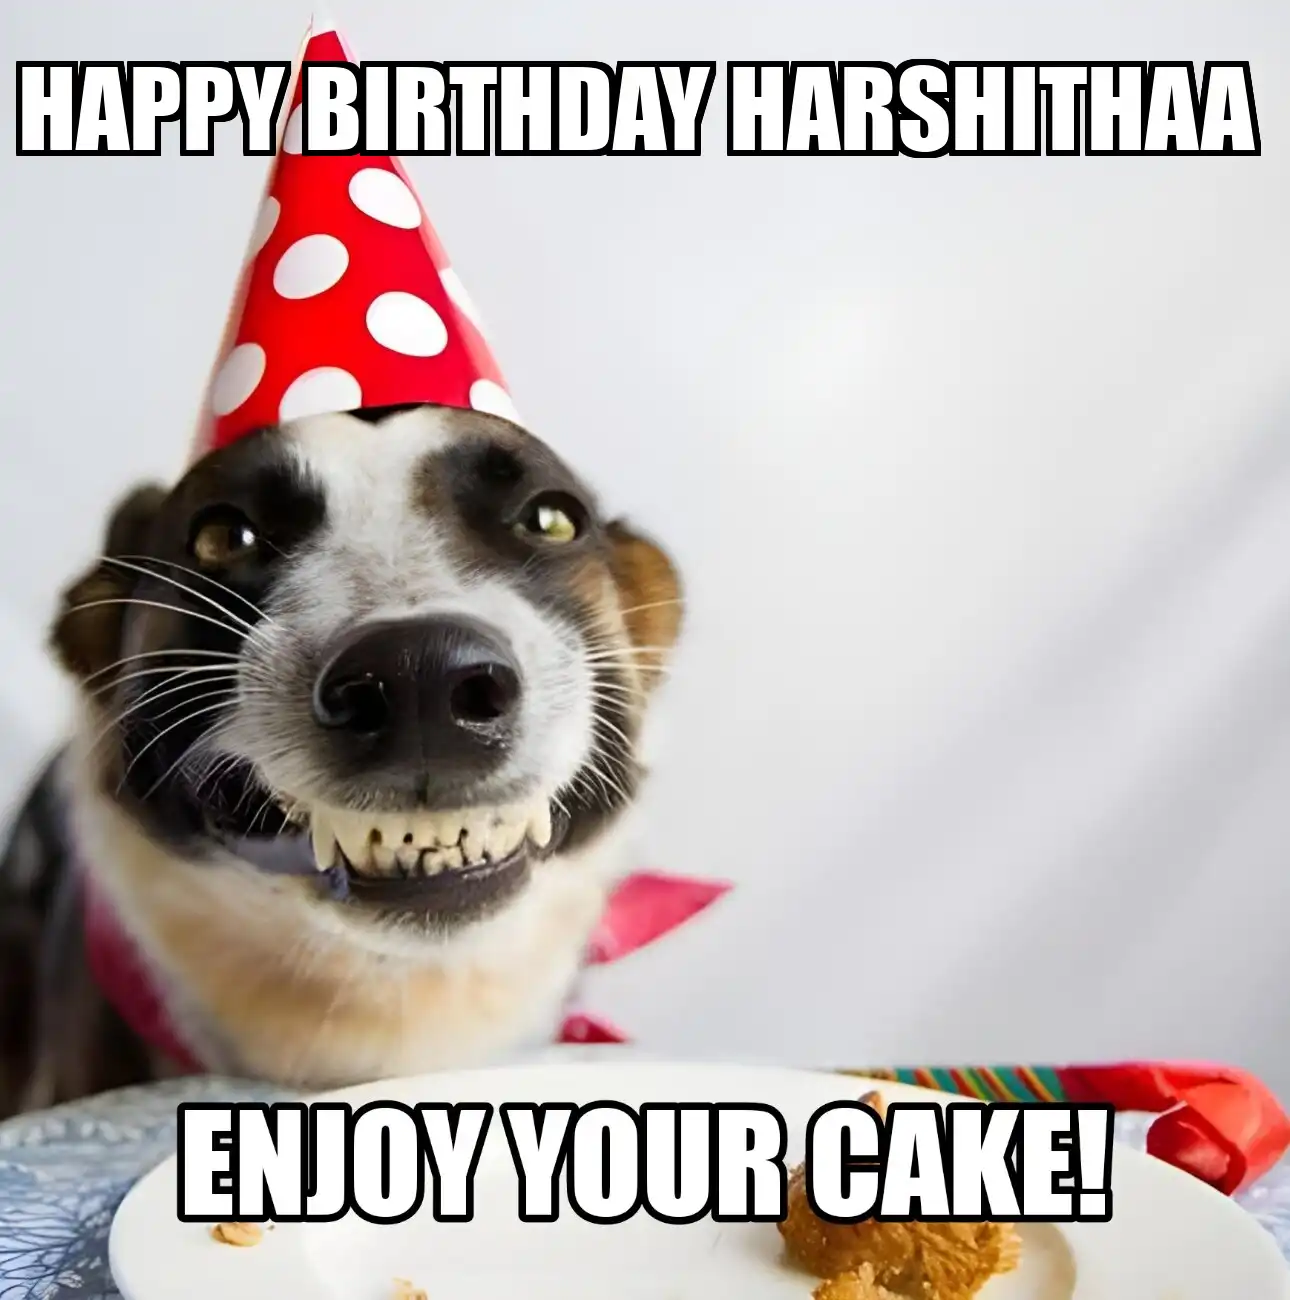 Happy Birthday Harshithaa Enjoy Your Cake Dog Meme